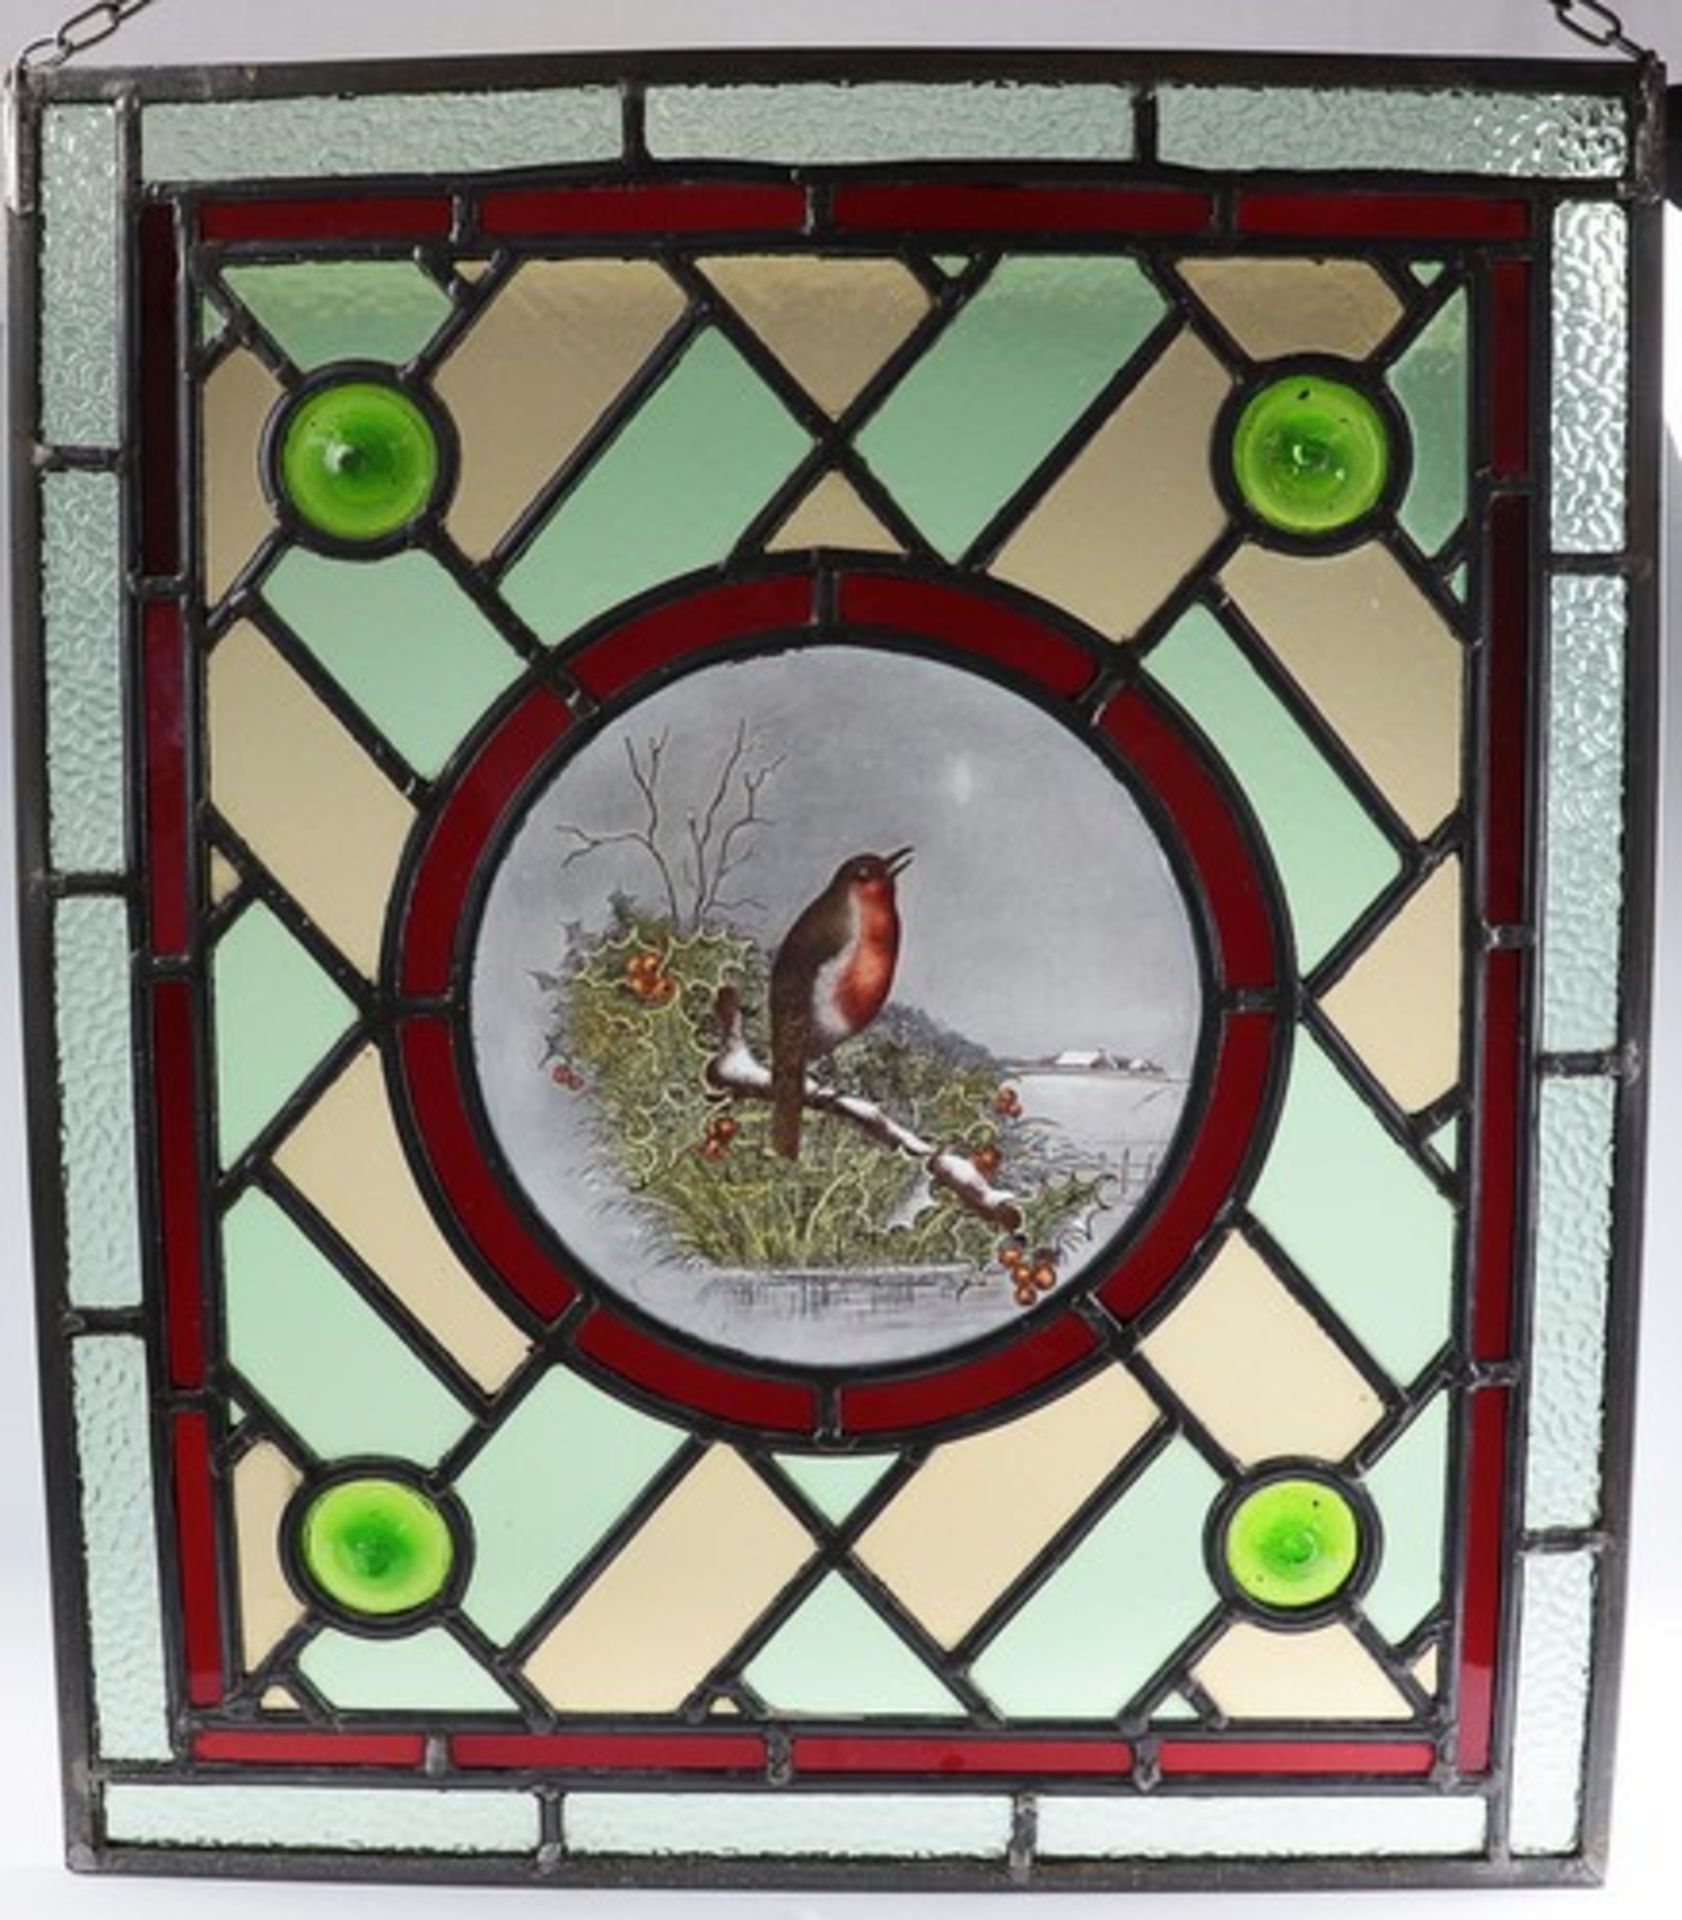 Glasfensterum 1900, farblose u. polychrome Bleiverglasung in rechteckiger Metallrahmung, außen